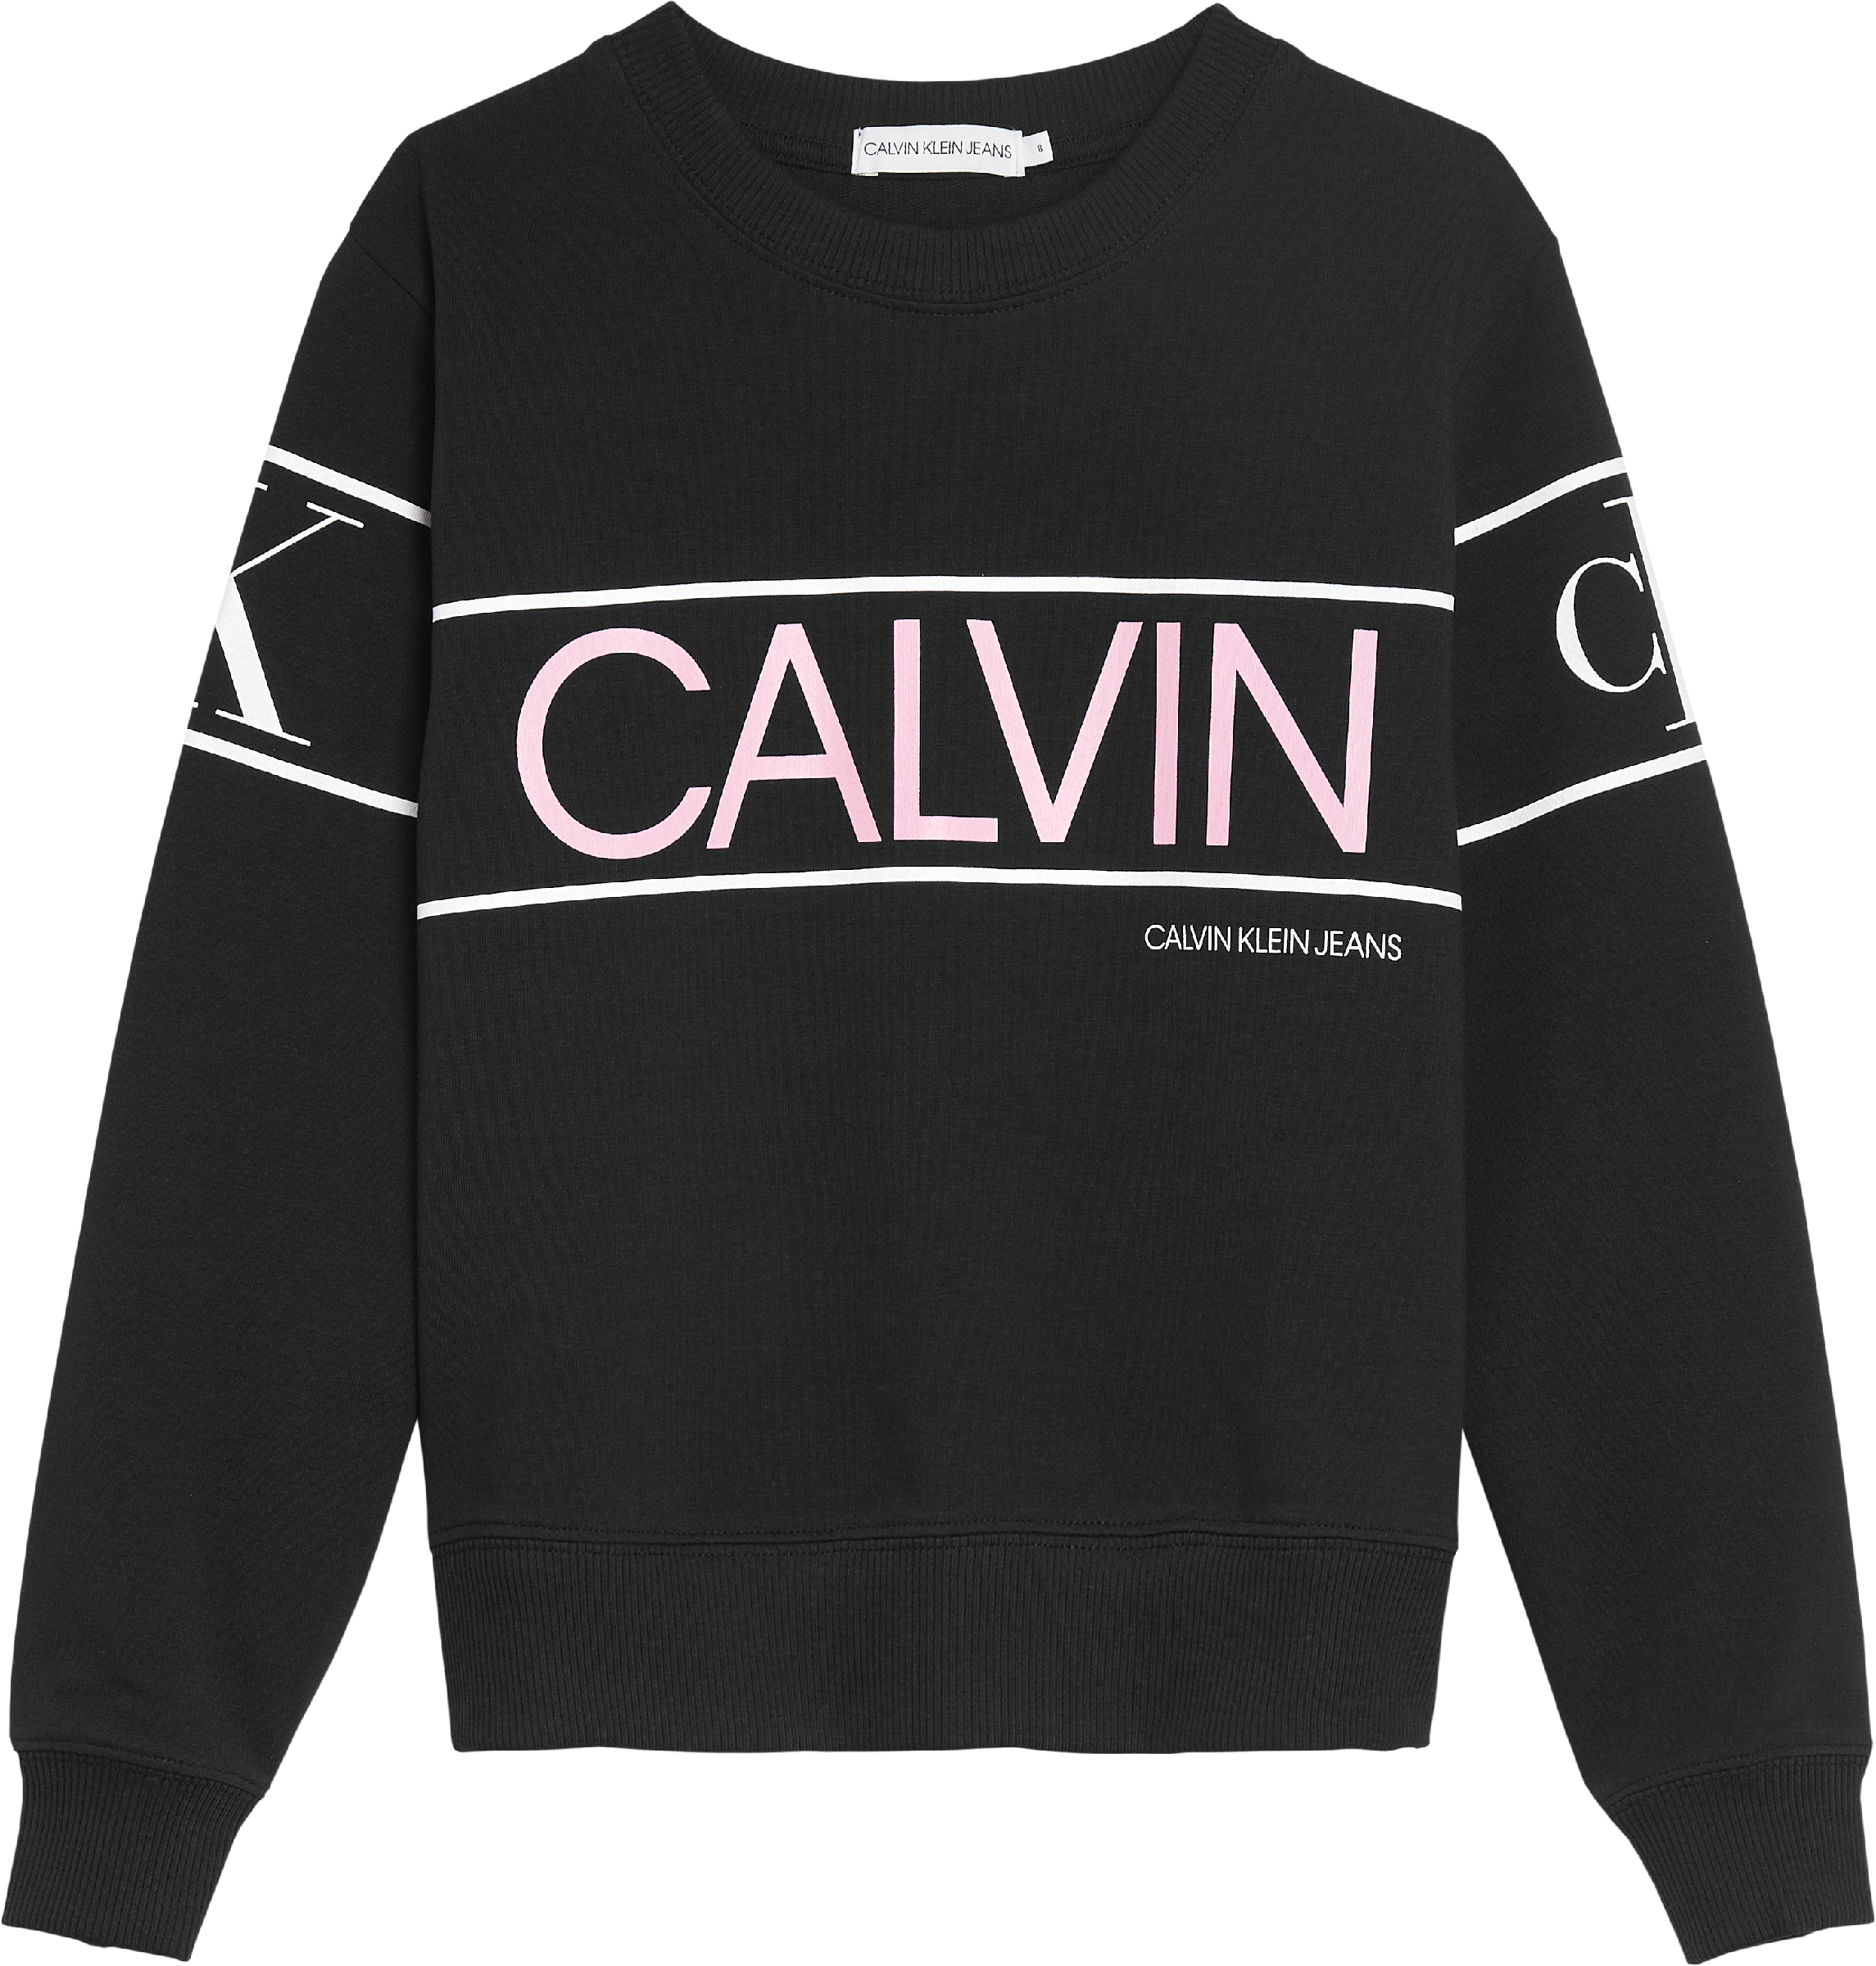 Meisjes CALVIN LOGO SWEATSHI van Calvin Klein in de kleur Zwart in maat 176.